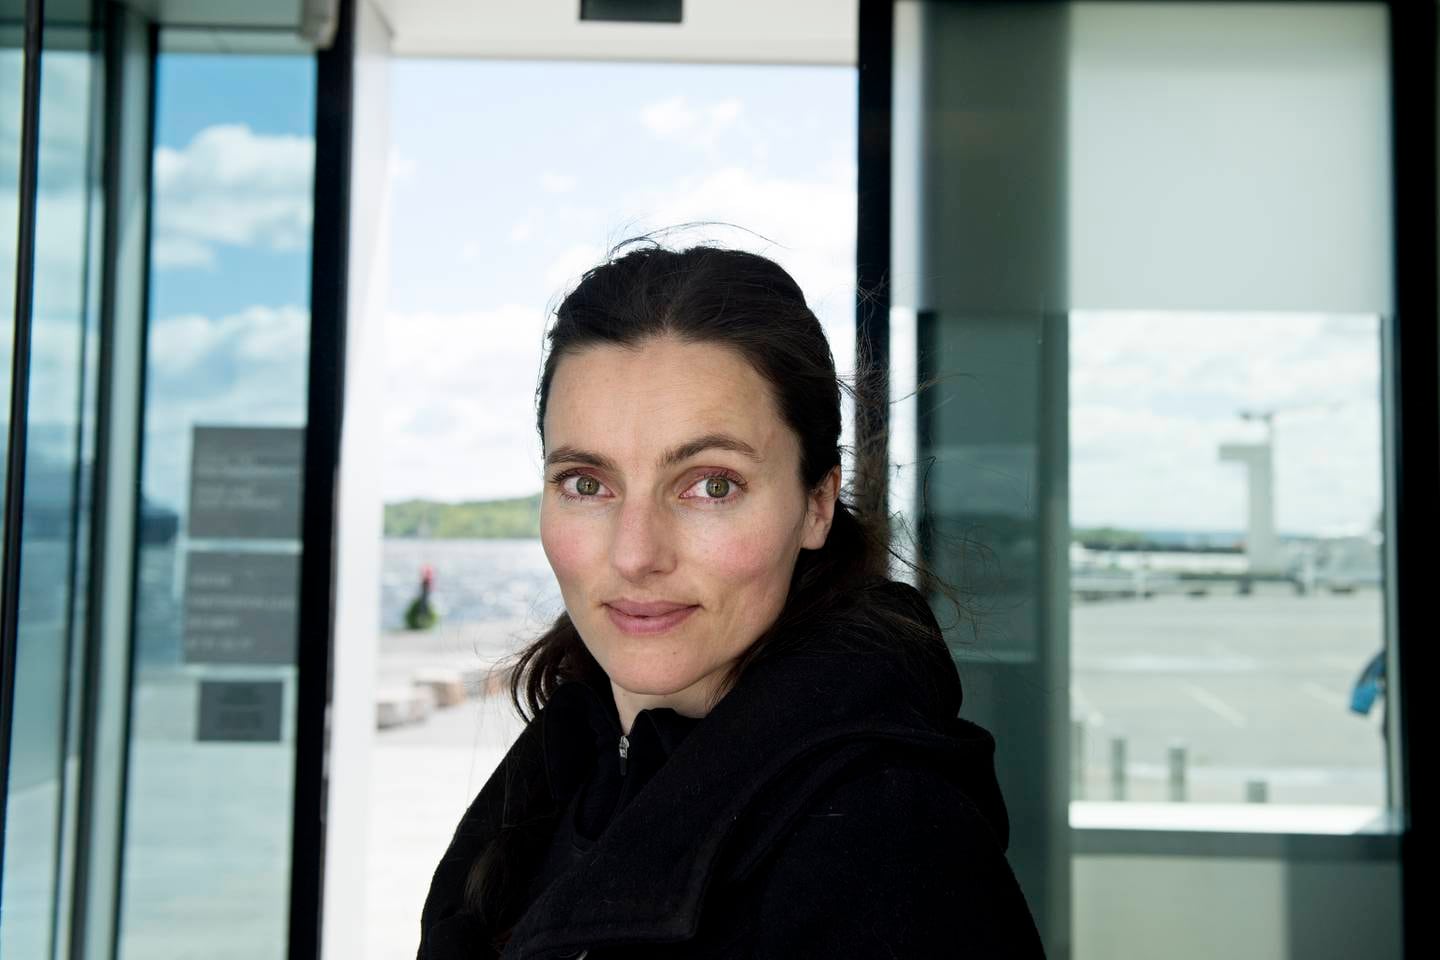 Komponist og artist Maja Solveig Kjelstrup Ratkje, her i 2015